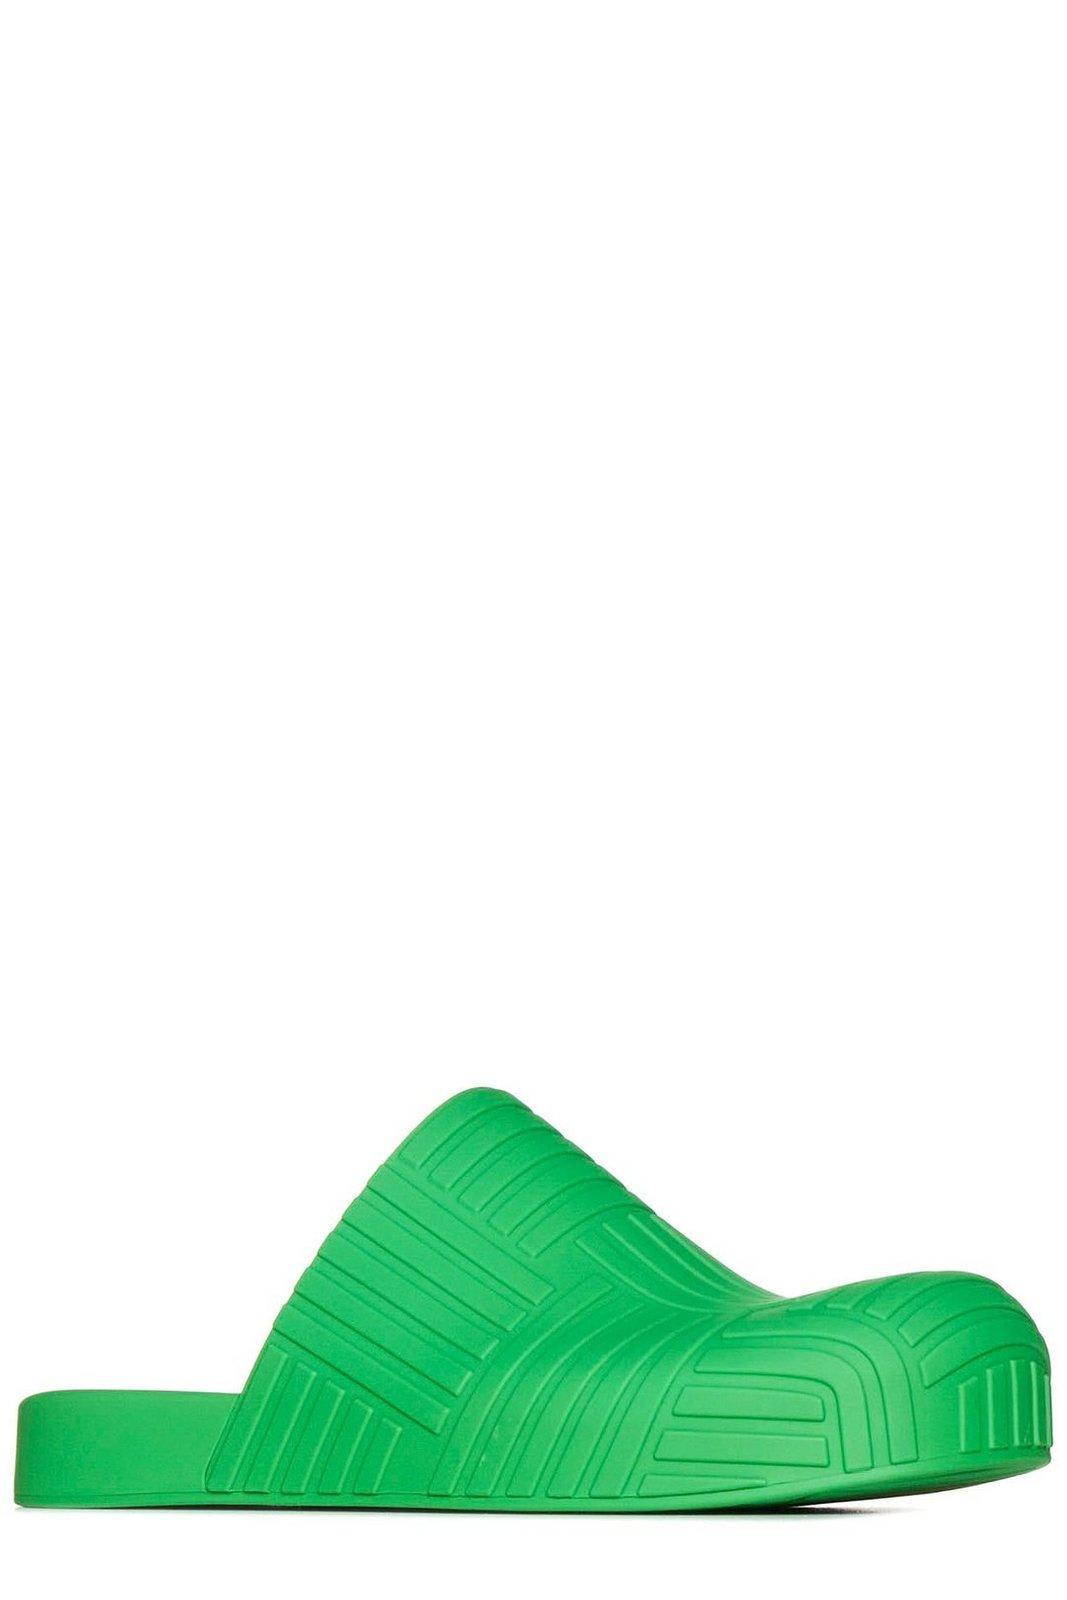 Bottega Veneta Cotton Resort Sandal in Green for Men Mens Shoes Slip-on shoes Slippers 